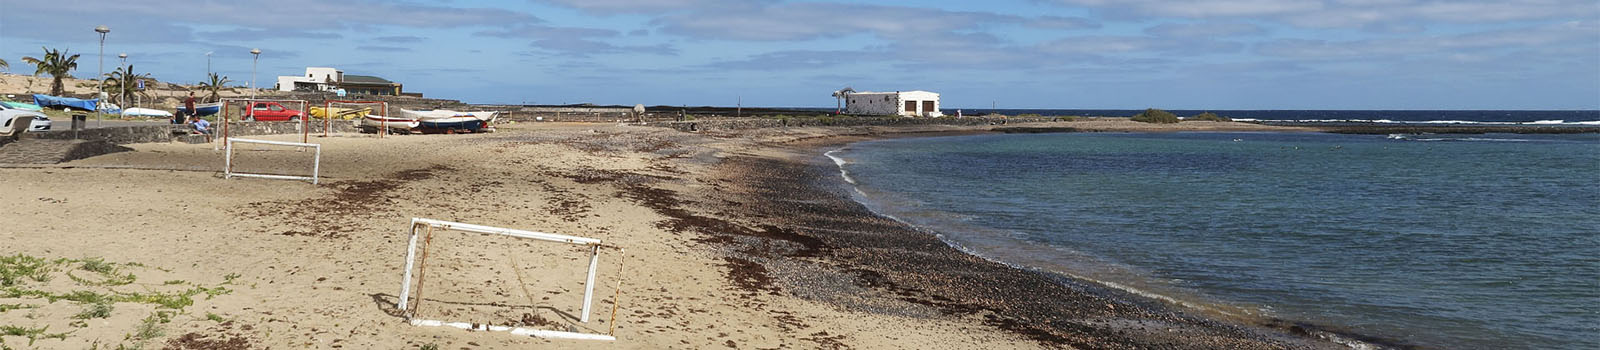 Der Strand von Salinas del Carmen Fuerteventura.